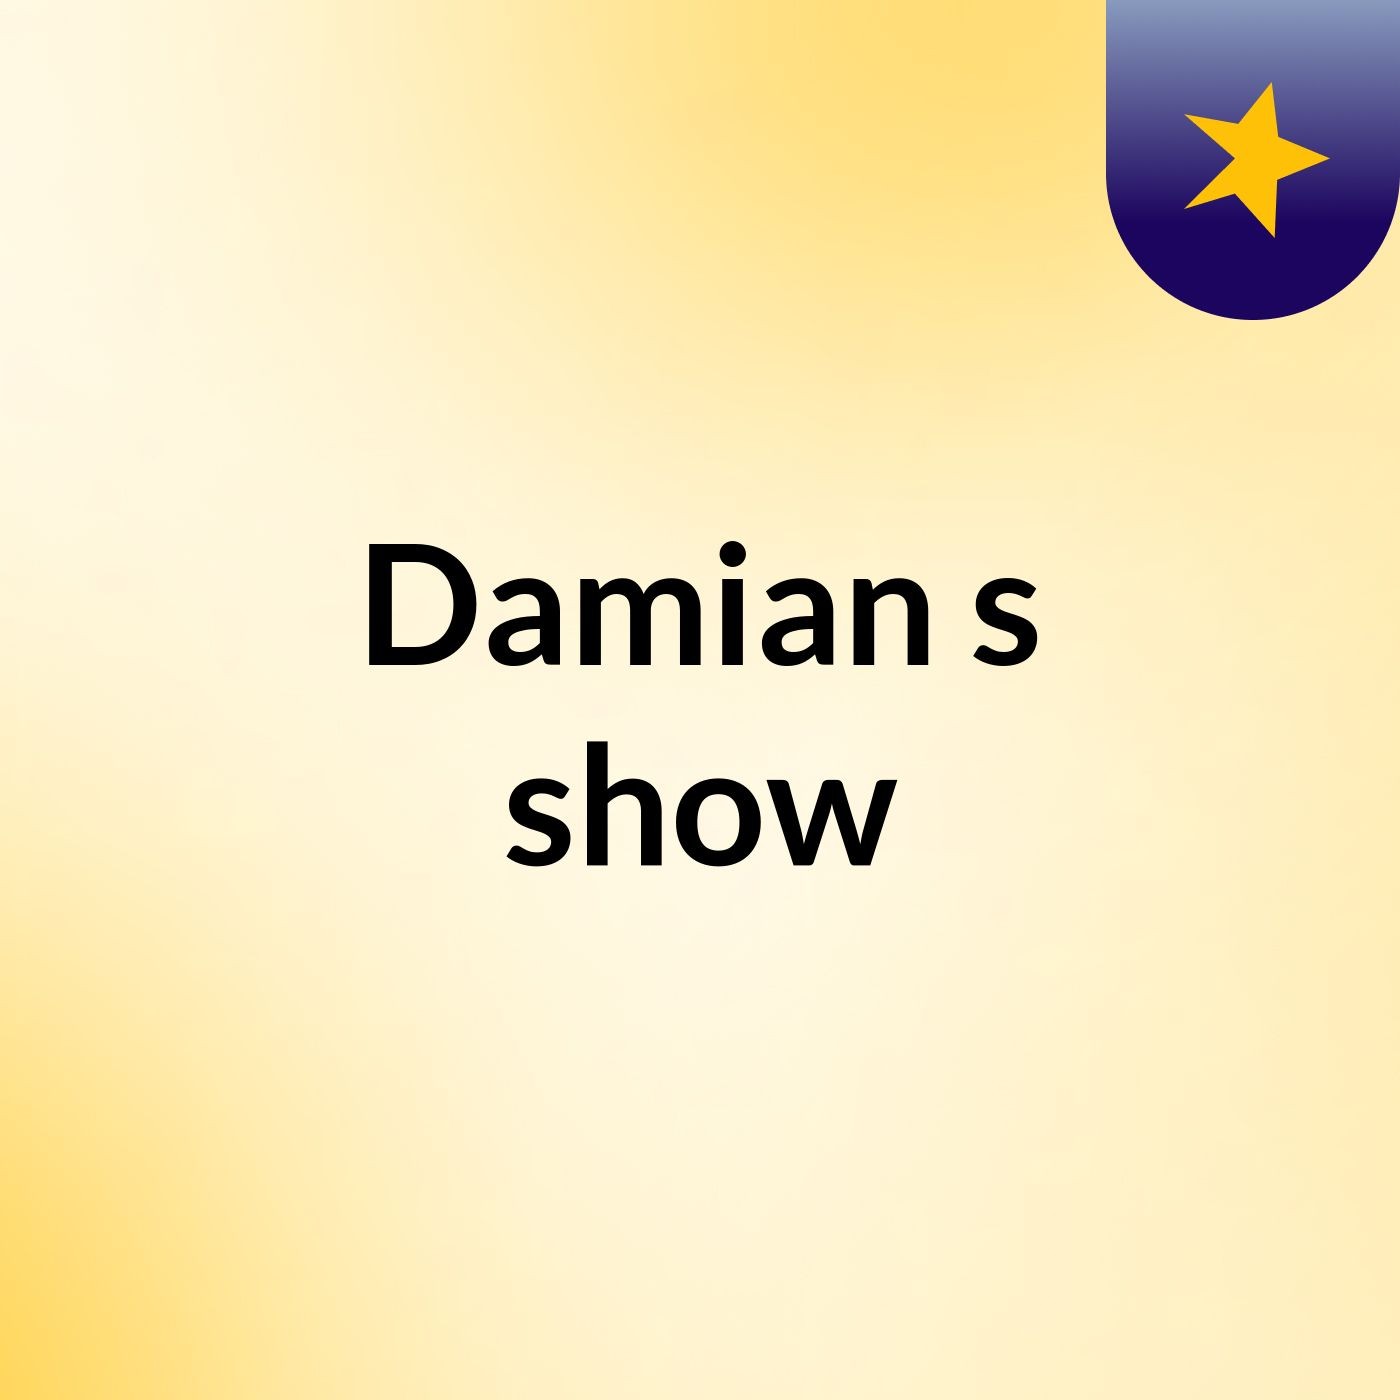 Damian's show